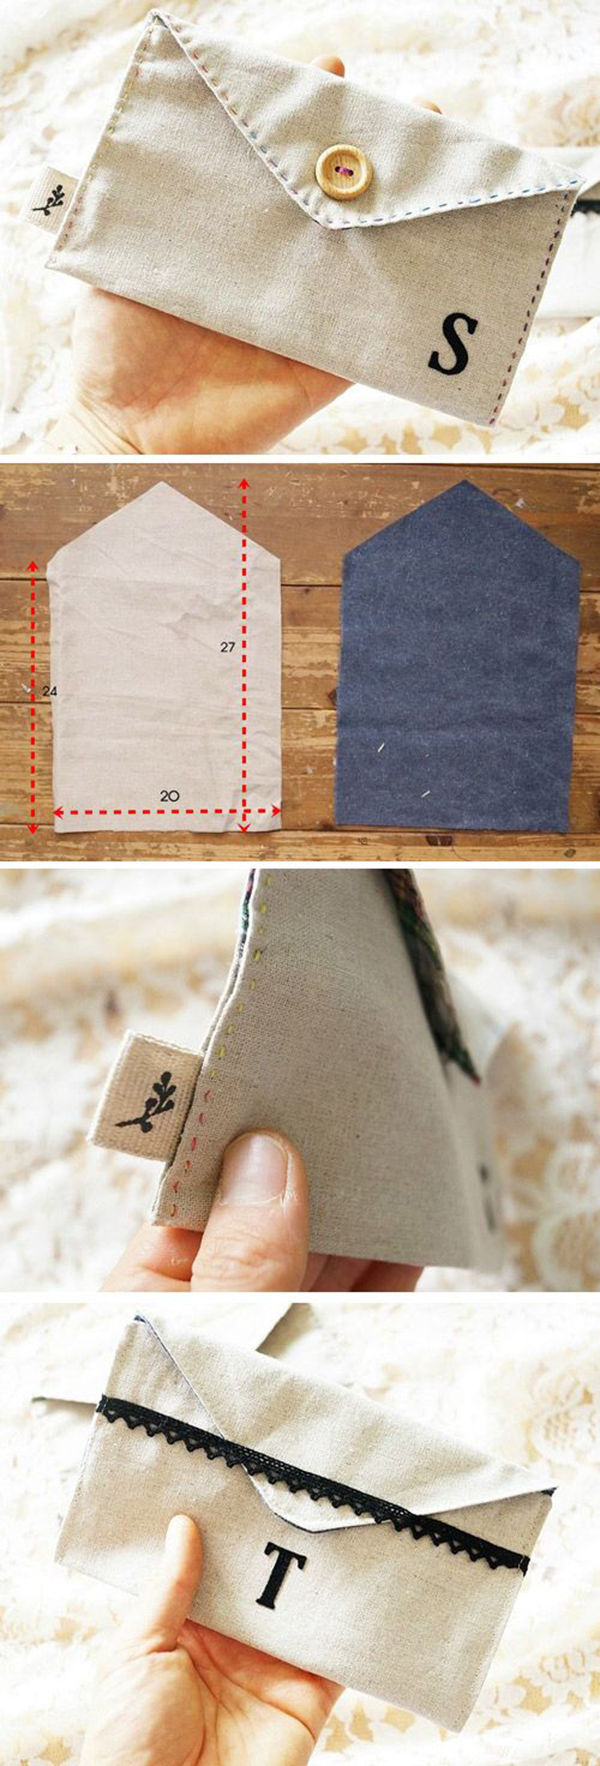 Текстильно! 30 идей для упаковки из ткани, фото № 29